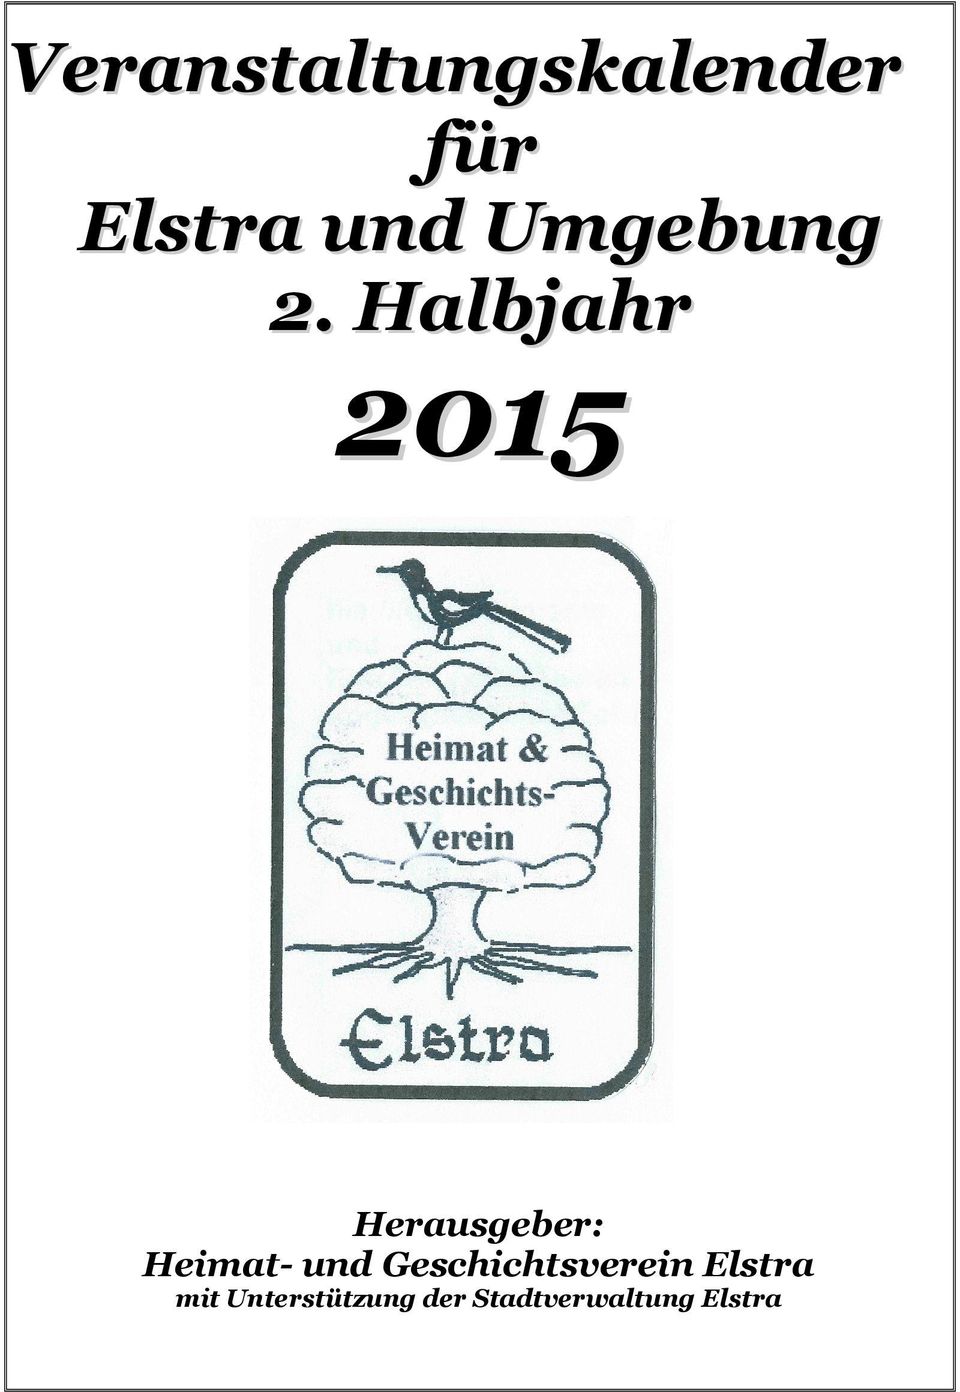 Halbjahr 2015 Herausgeber: Heimat- und